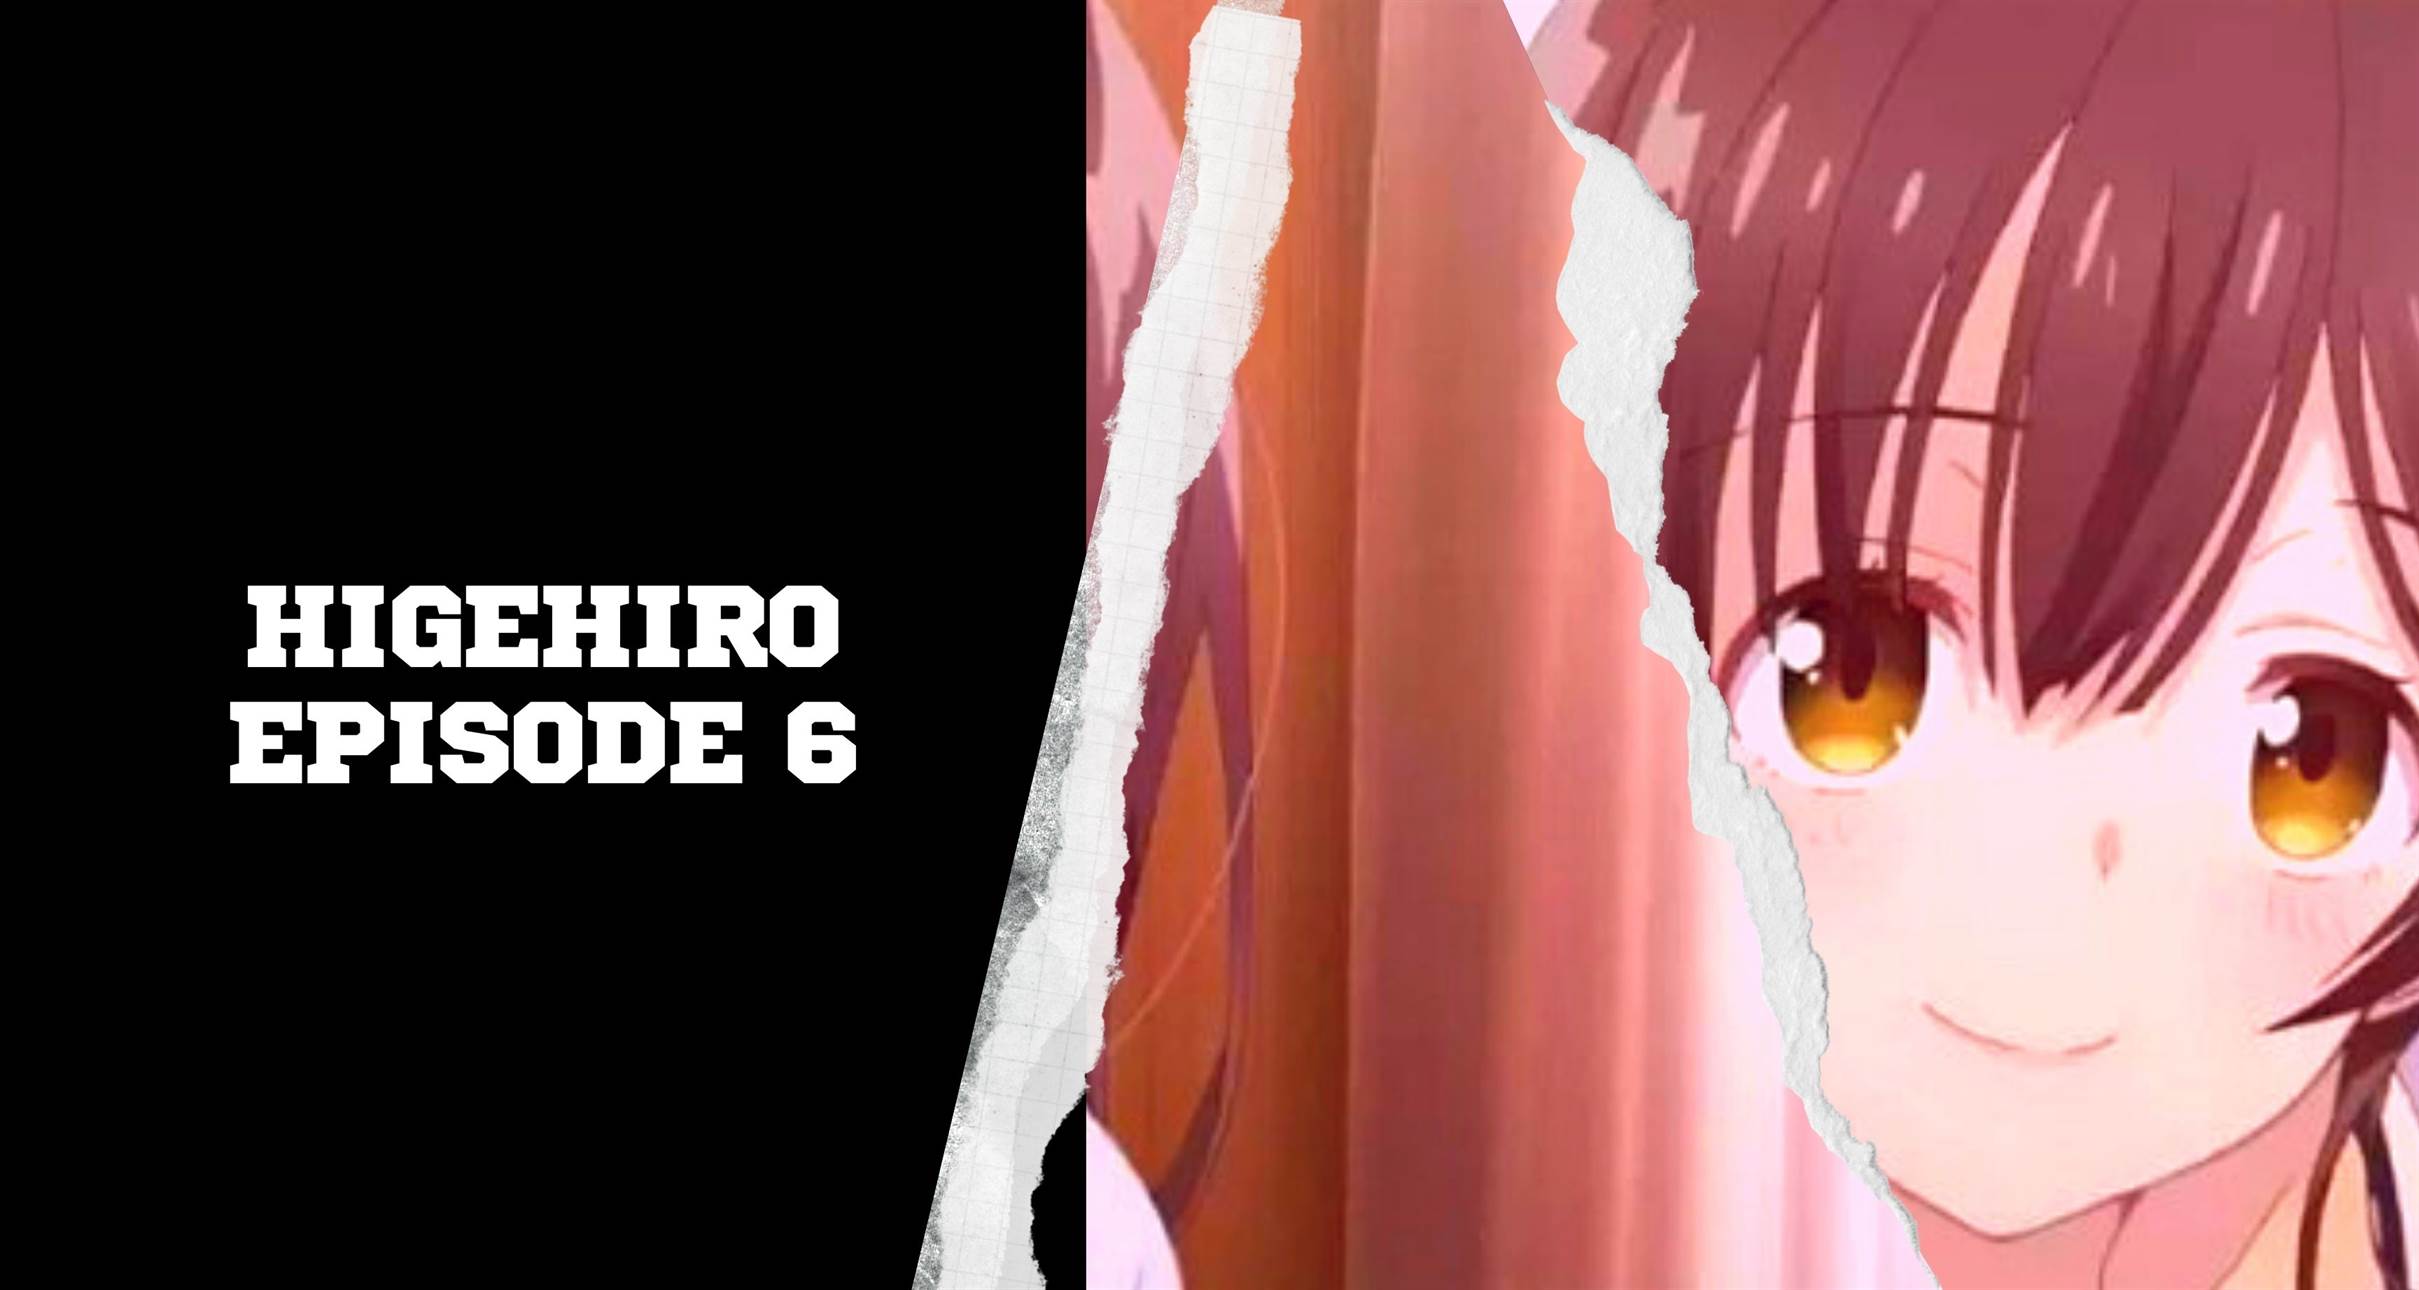 Higehiro Episode 6